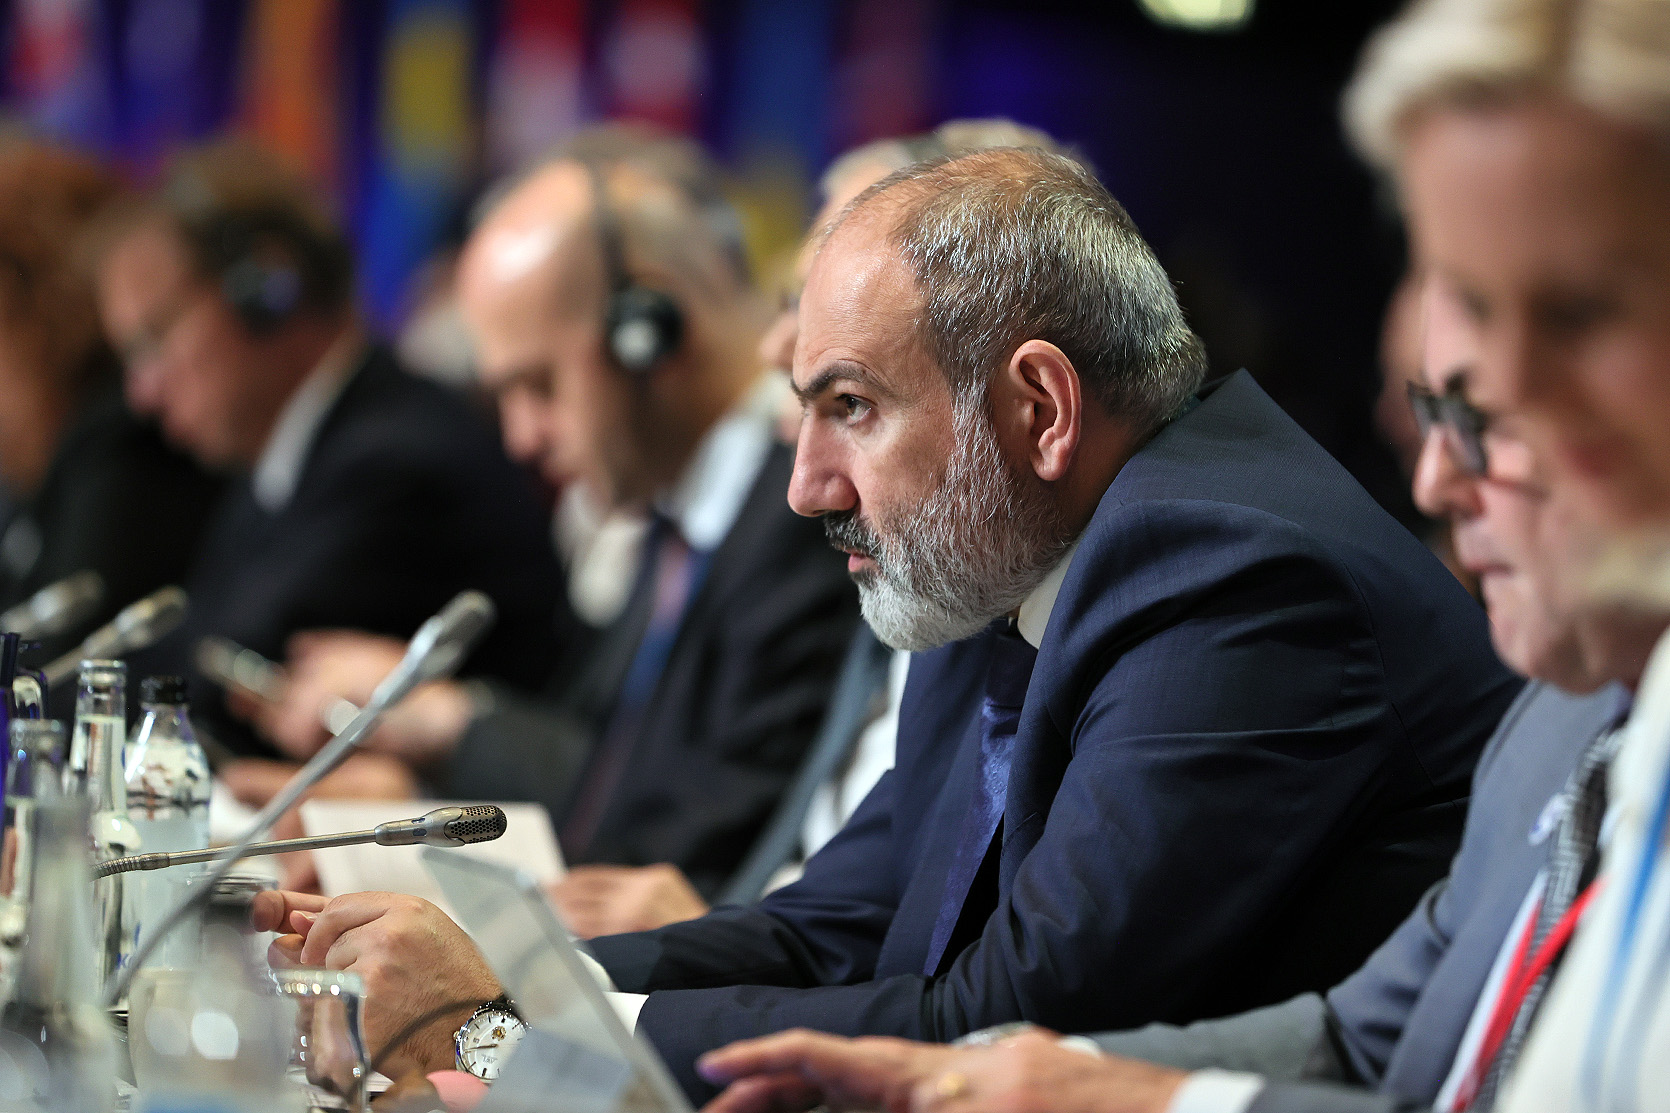 Направление международной миссии по установлению фактов в Нагорный Карабах и Лачинский коридор является необходимостью: речь премьер-министра на саммите Совета Европы